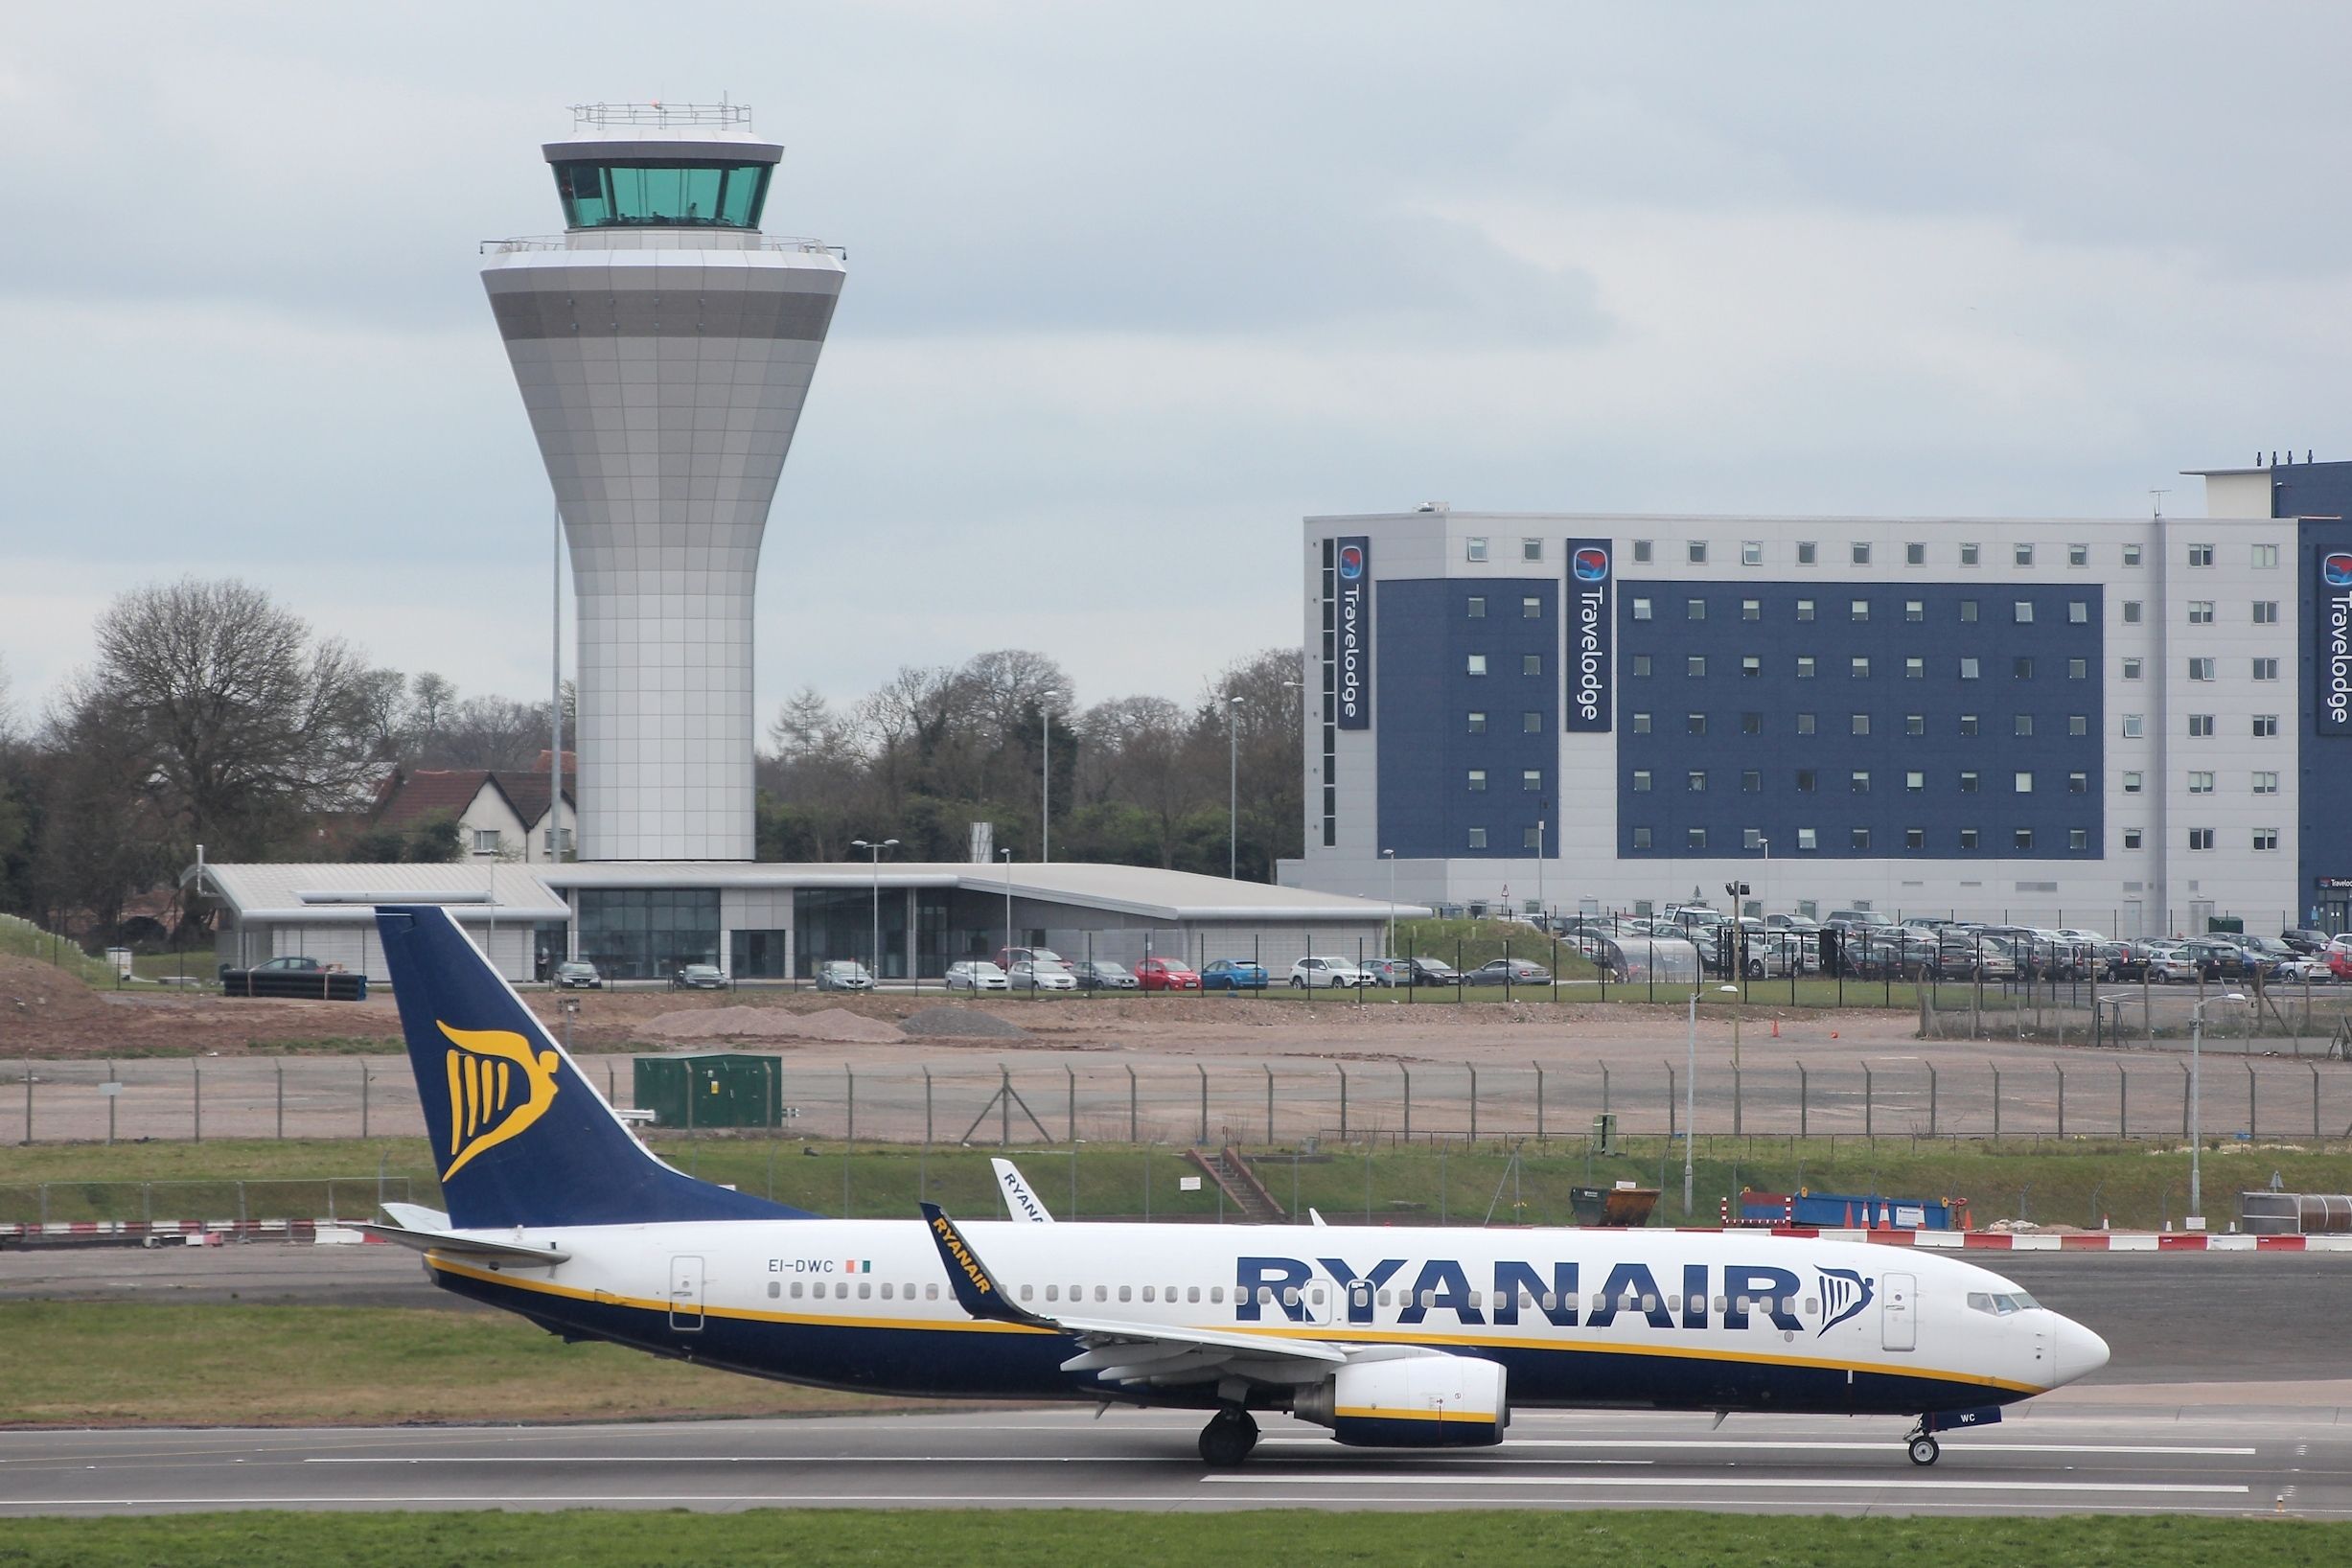  Pilots taxi Ryanair Boeing 737 at Birmingham Airport, UK